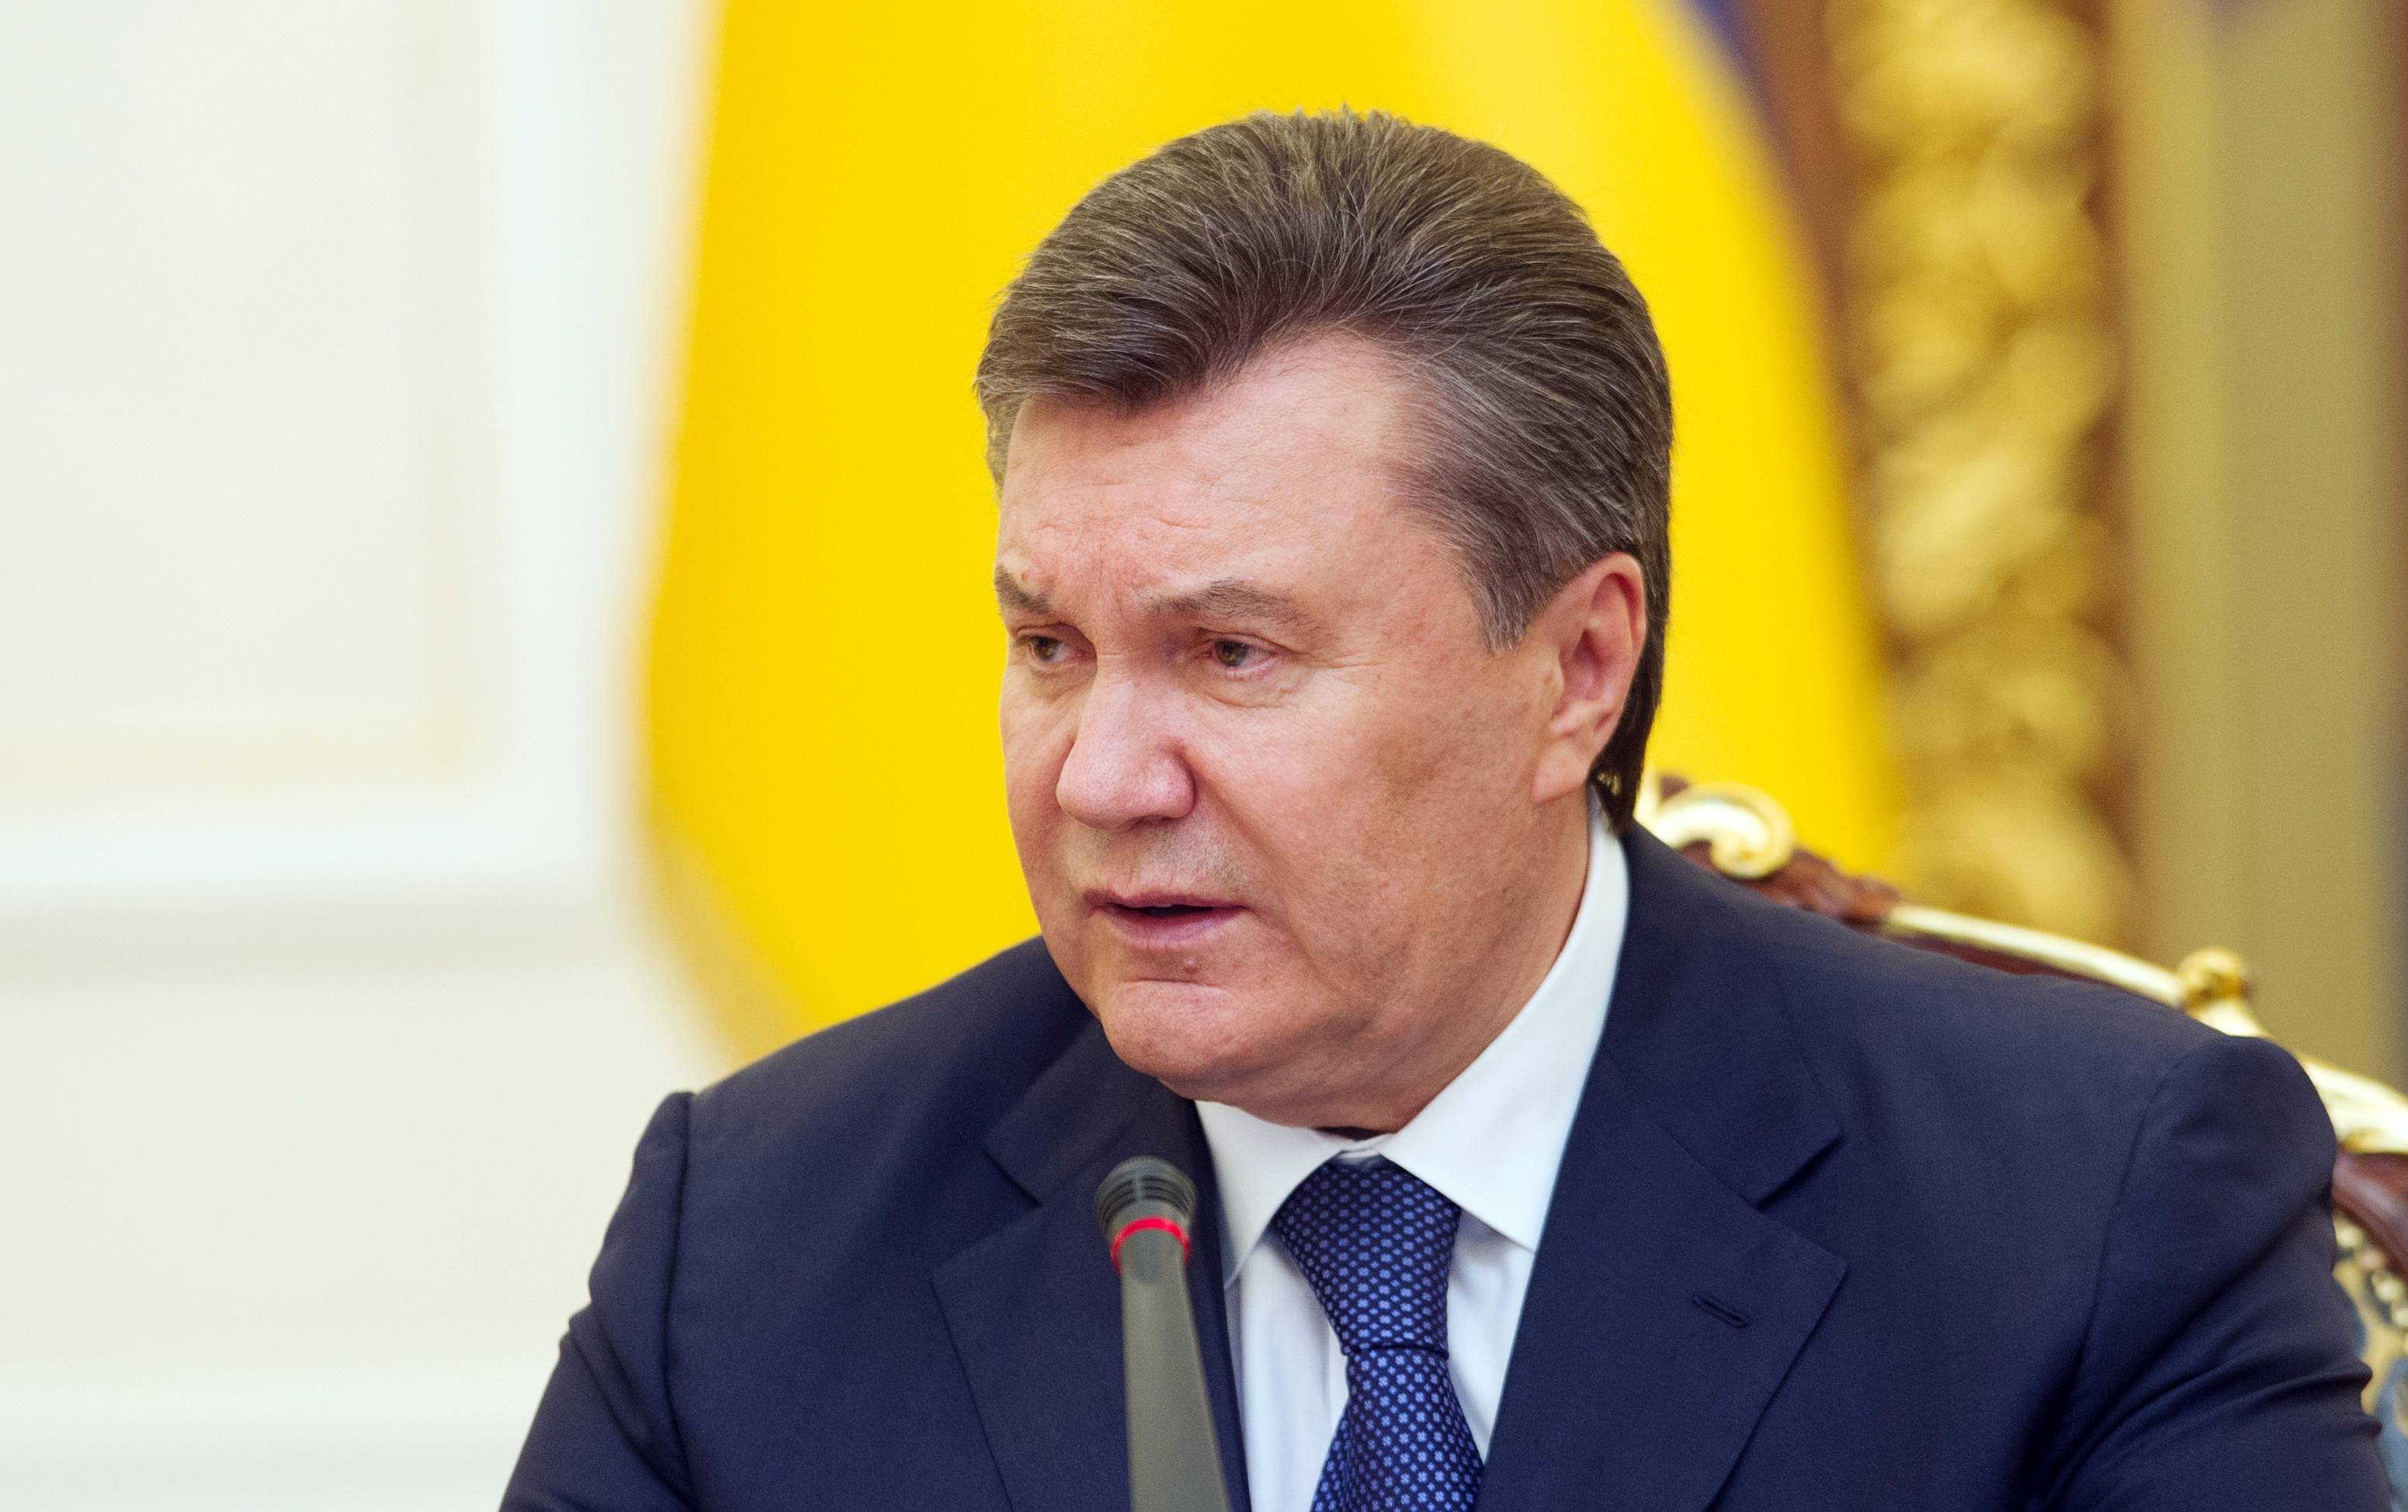 L'ex presidente dell'Ucraina Viktor Yanukovych è stato condannato a 13 anni di carcere per alto tradimento